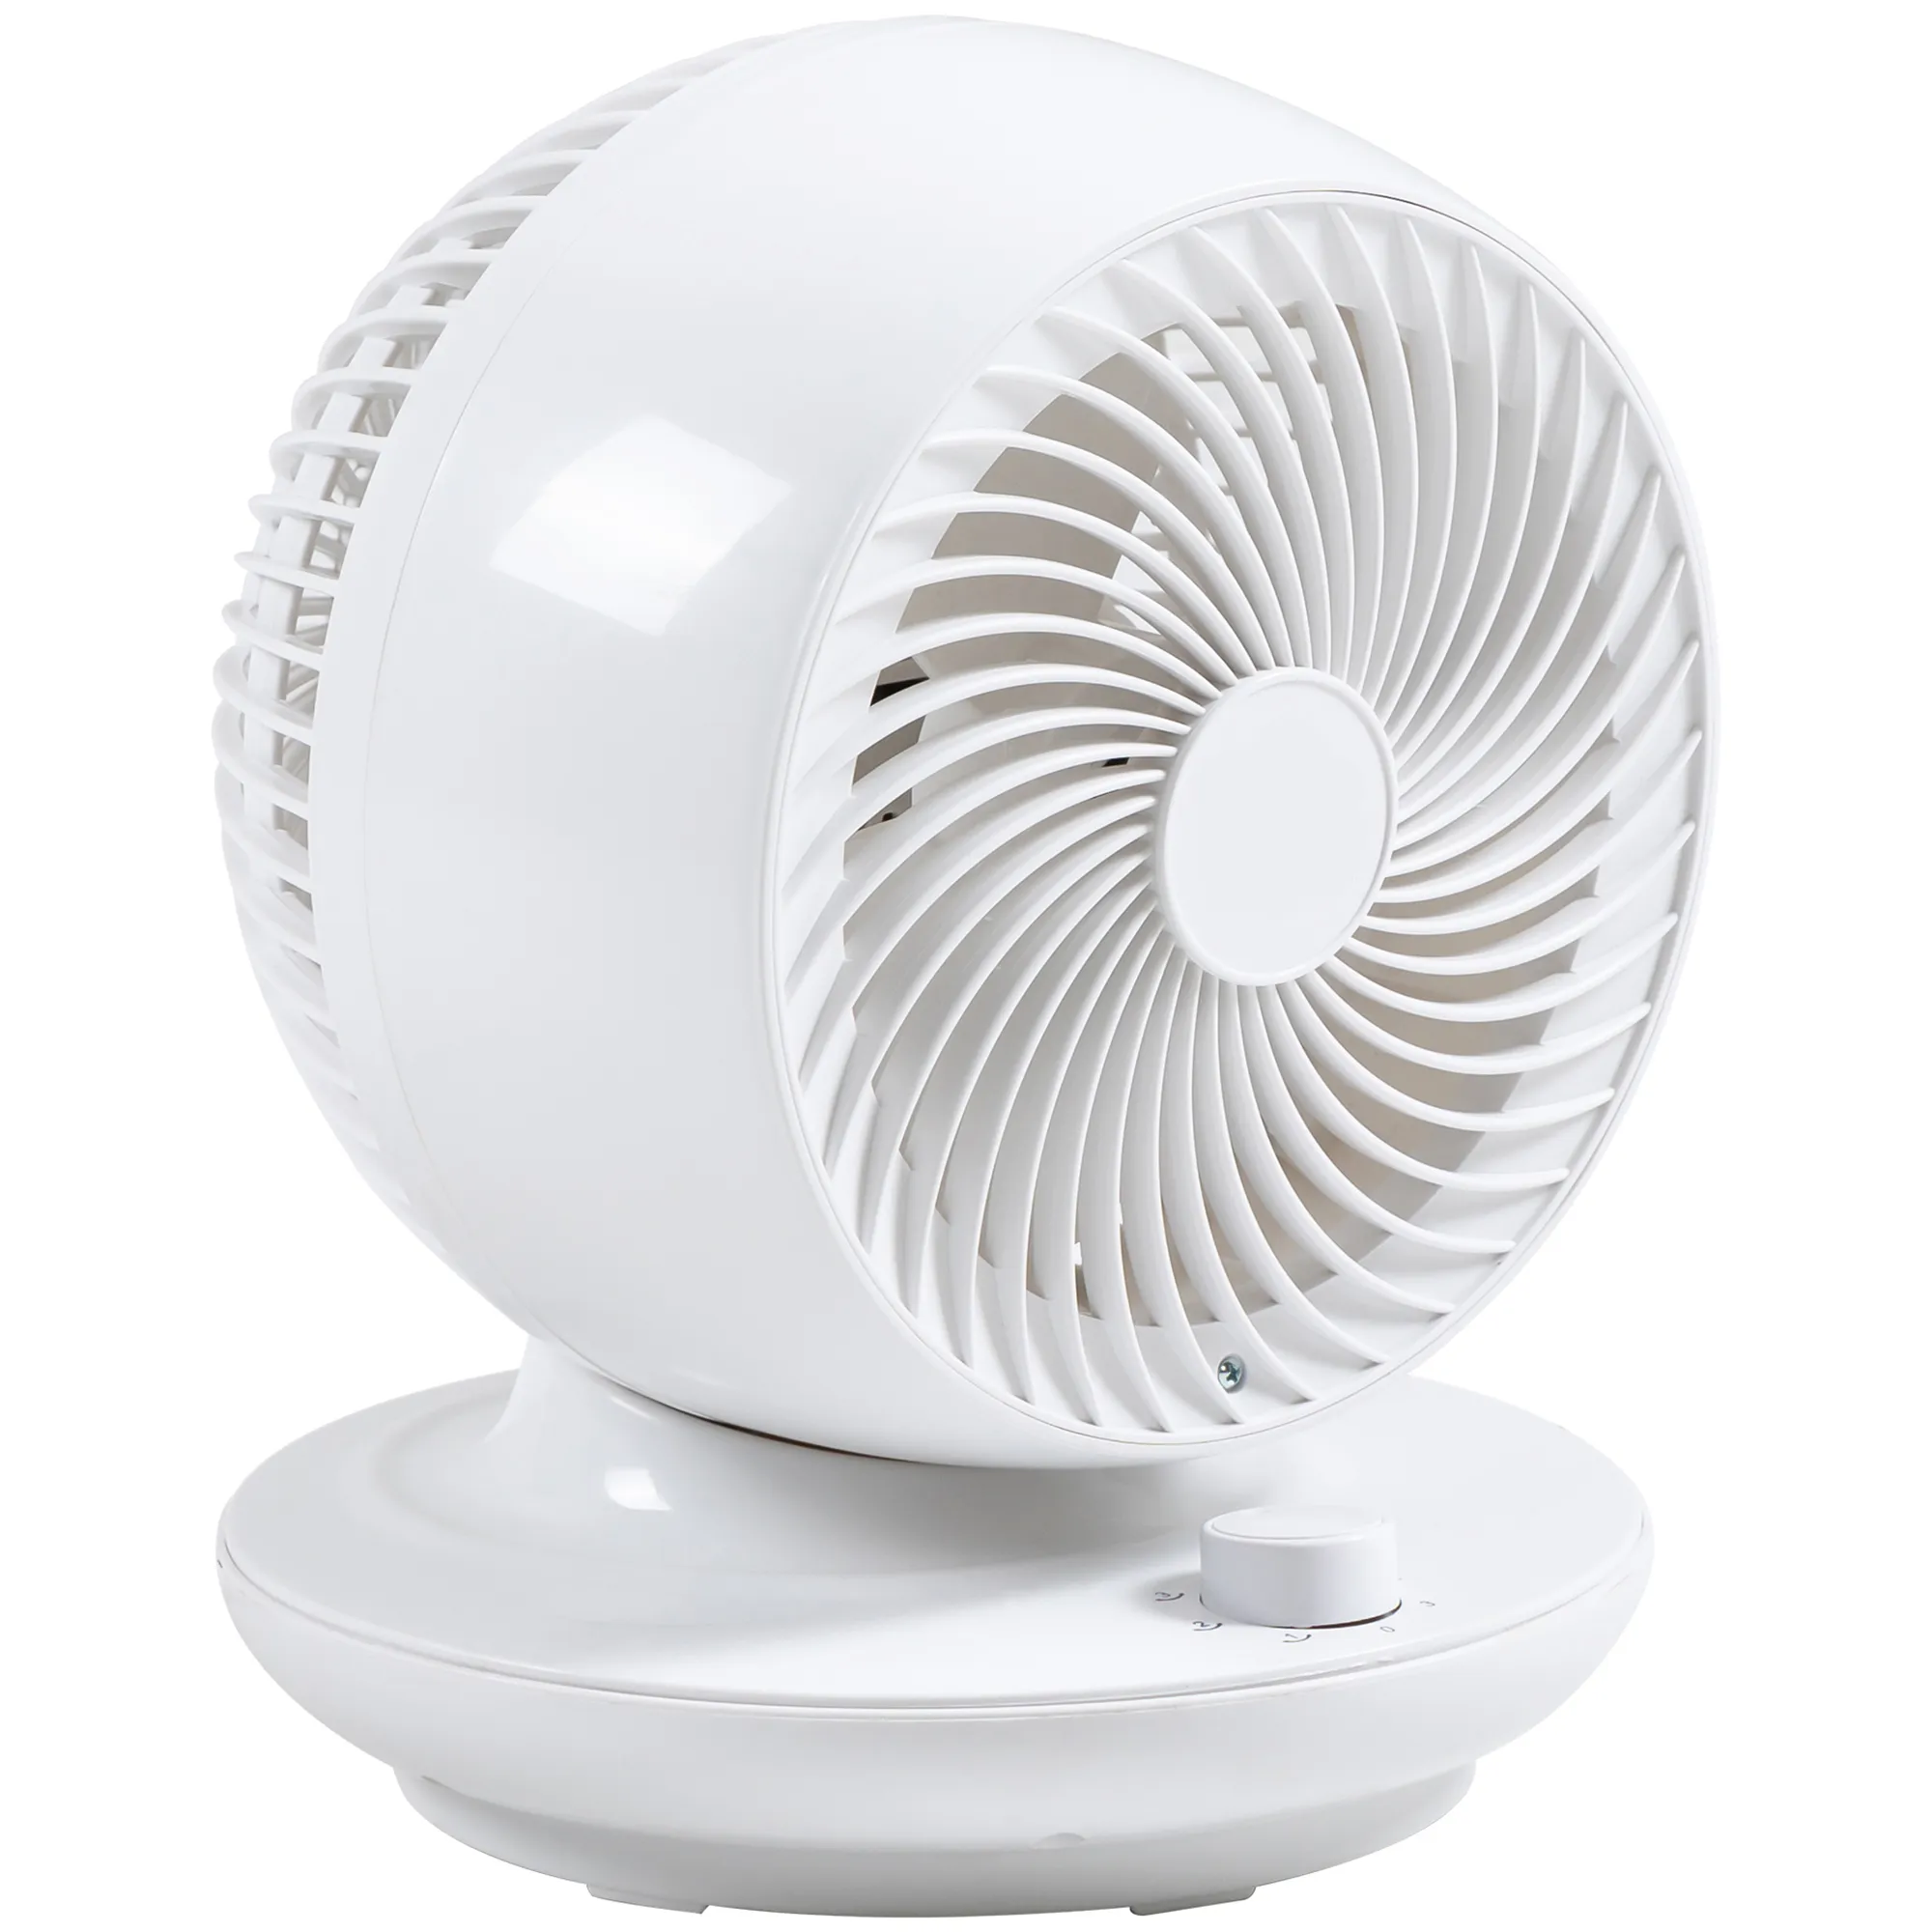  Ventilatore da Tavolo a 3 Velocità, Ventilatore Portatile con Oscillazione di 70° e Inclinazione di 90°, per Casa e Ufficio, Bianco e Nero